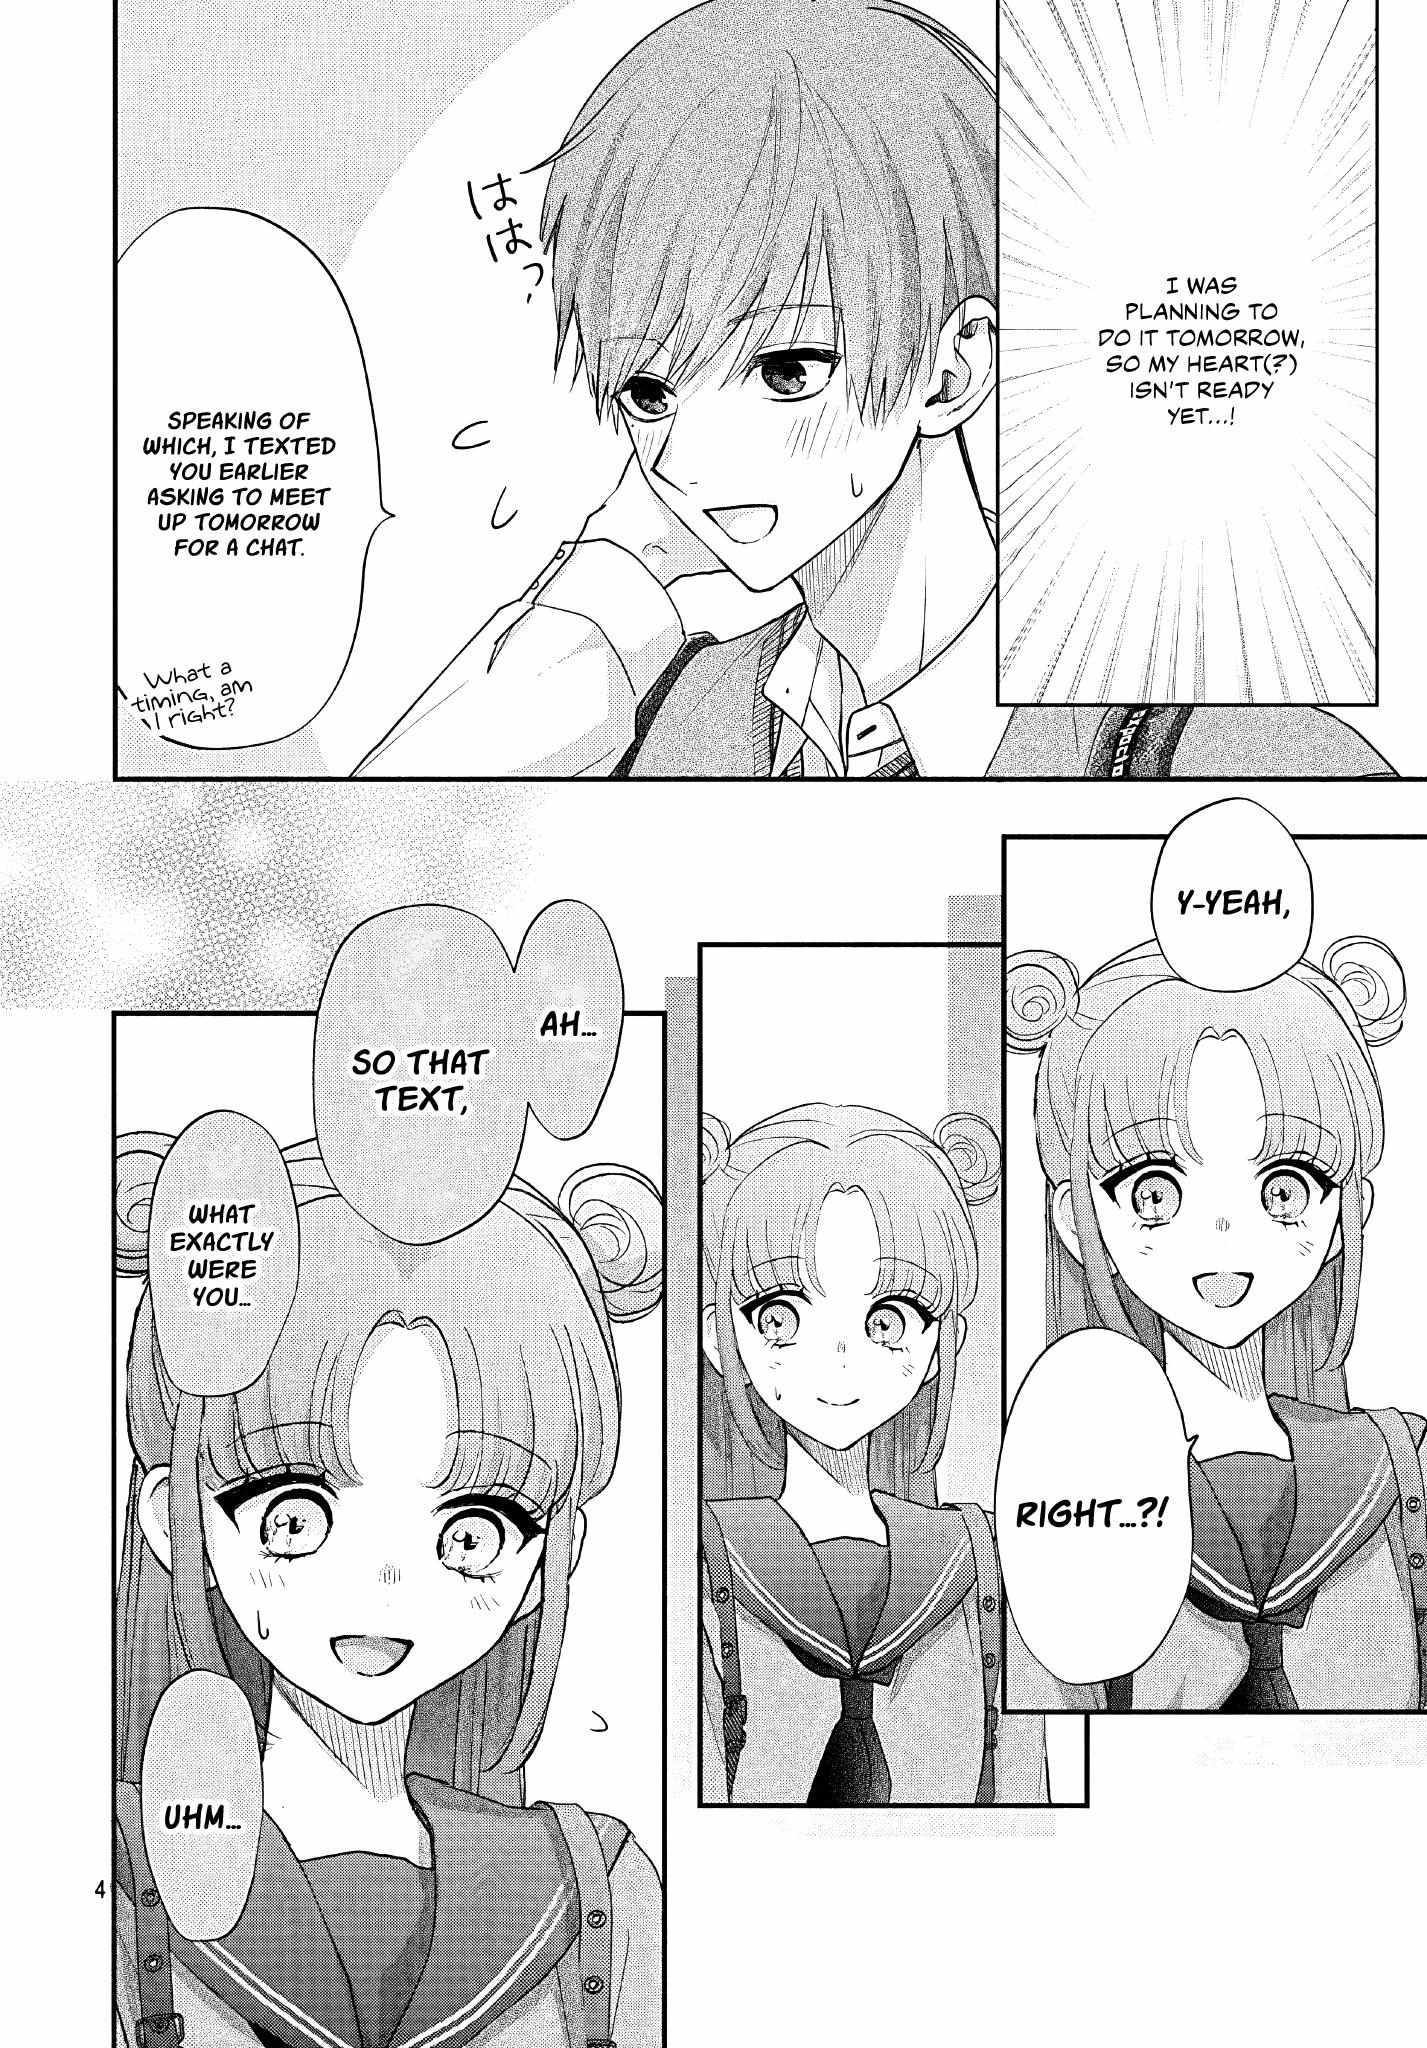 I Hate Komiyama - 11 page 5-cc1240da